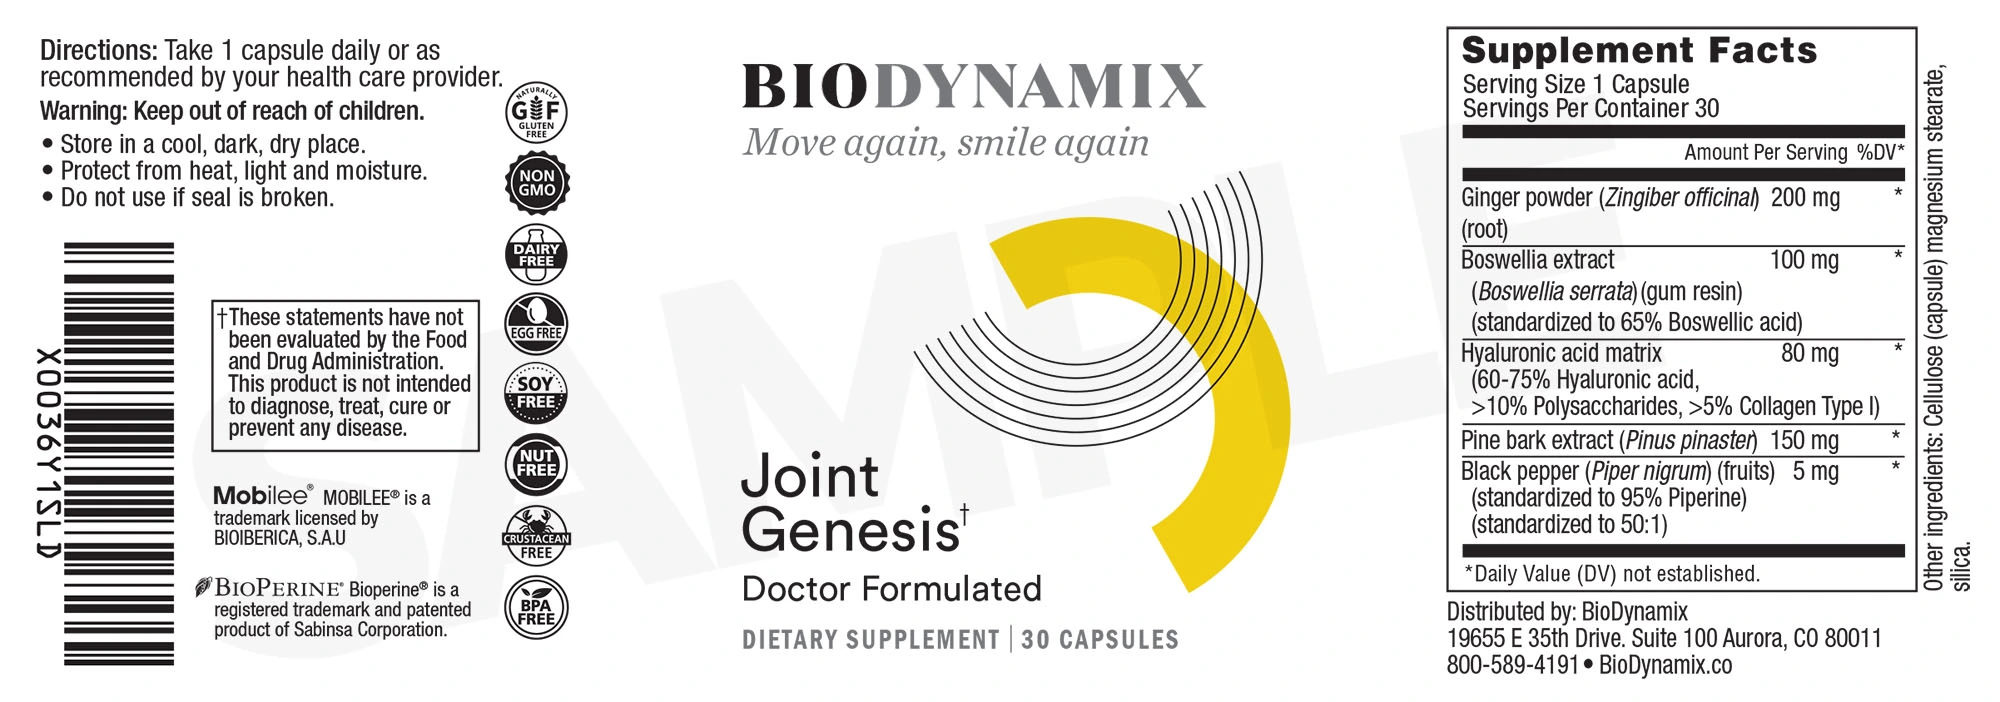 BioDynamix-Joint-Genesis-ingredients